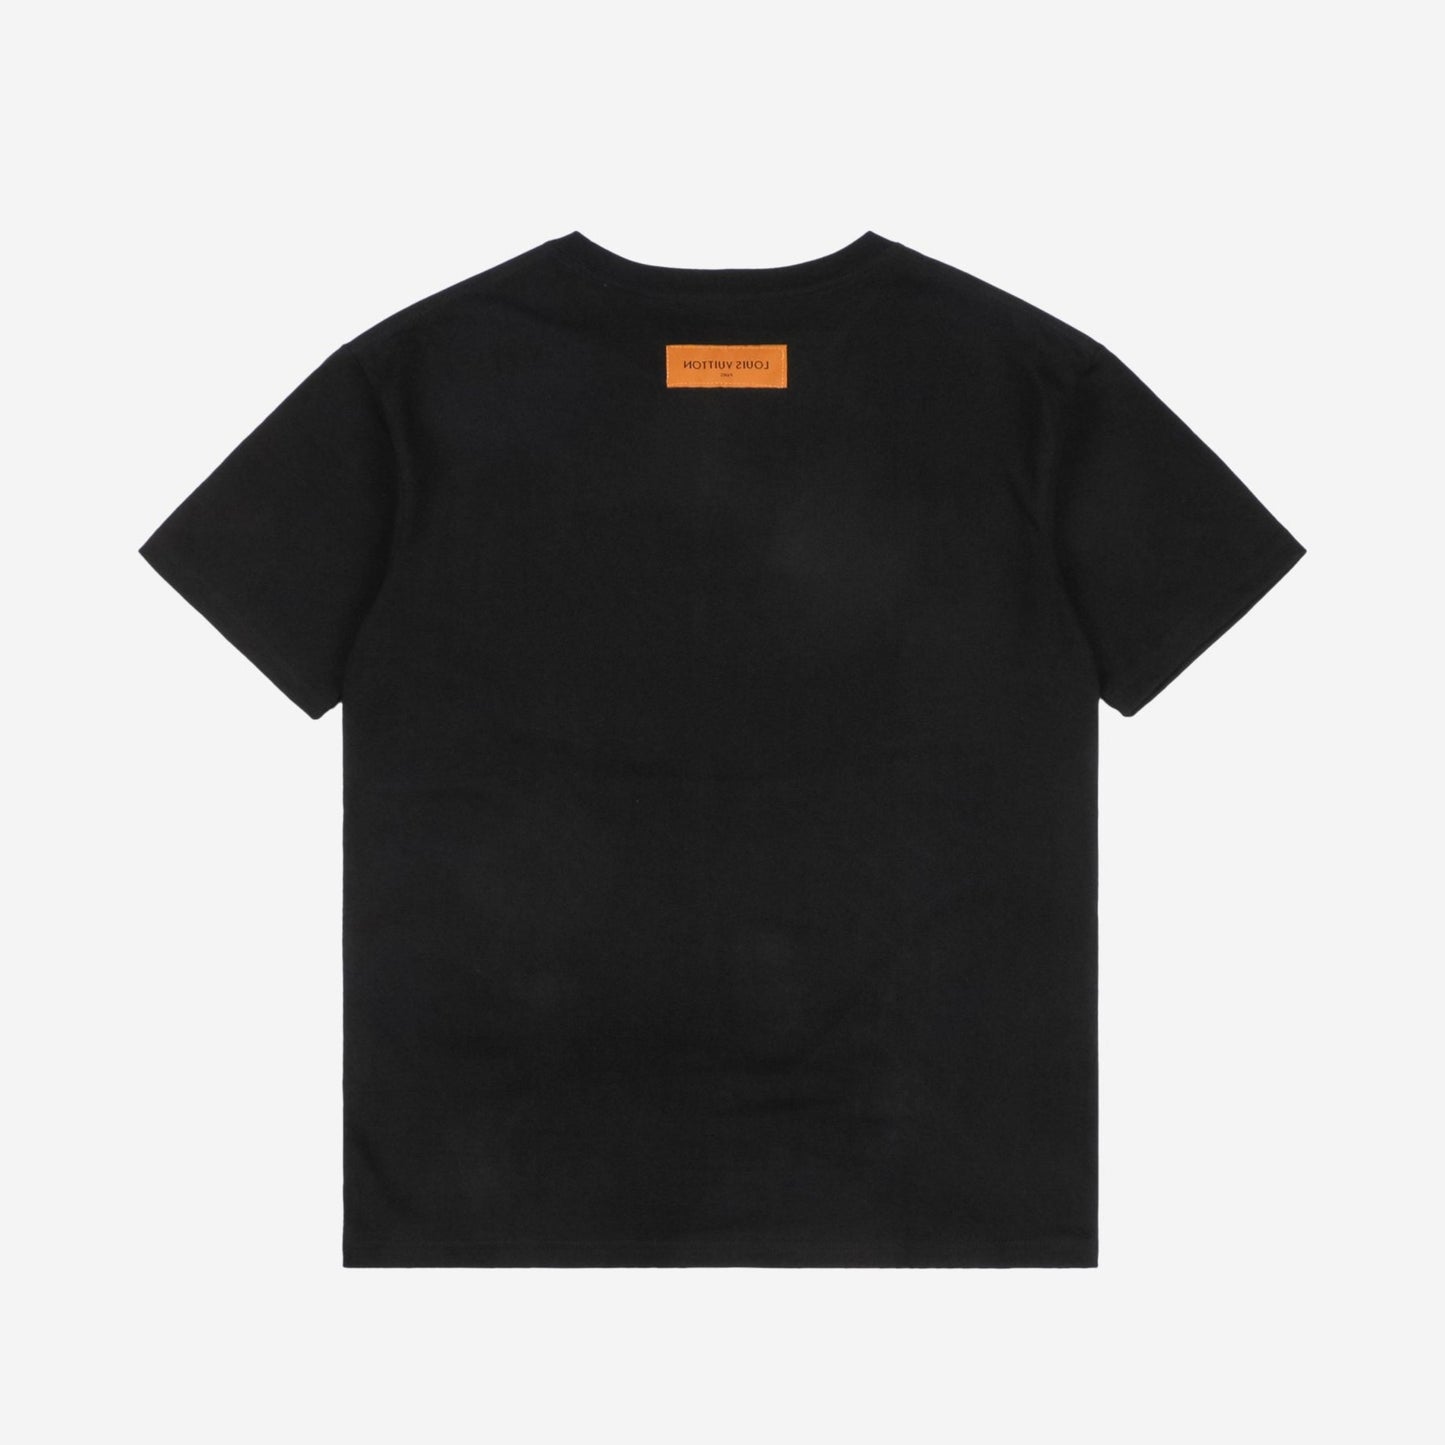 LV Black Studio Homme T-Shirt